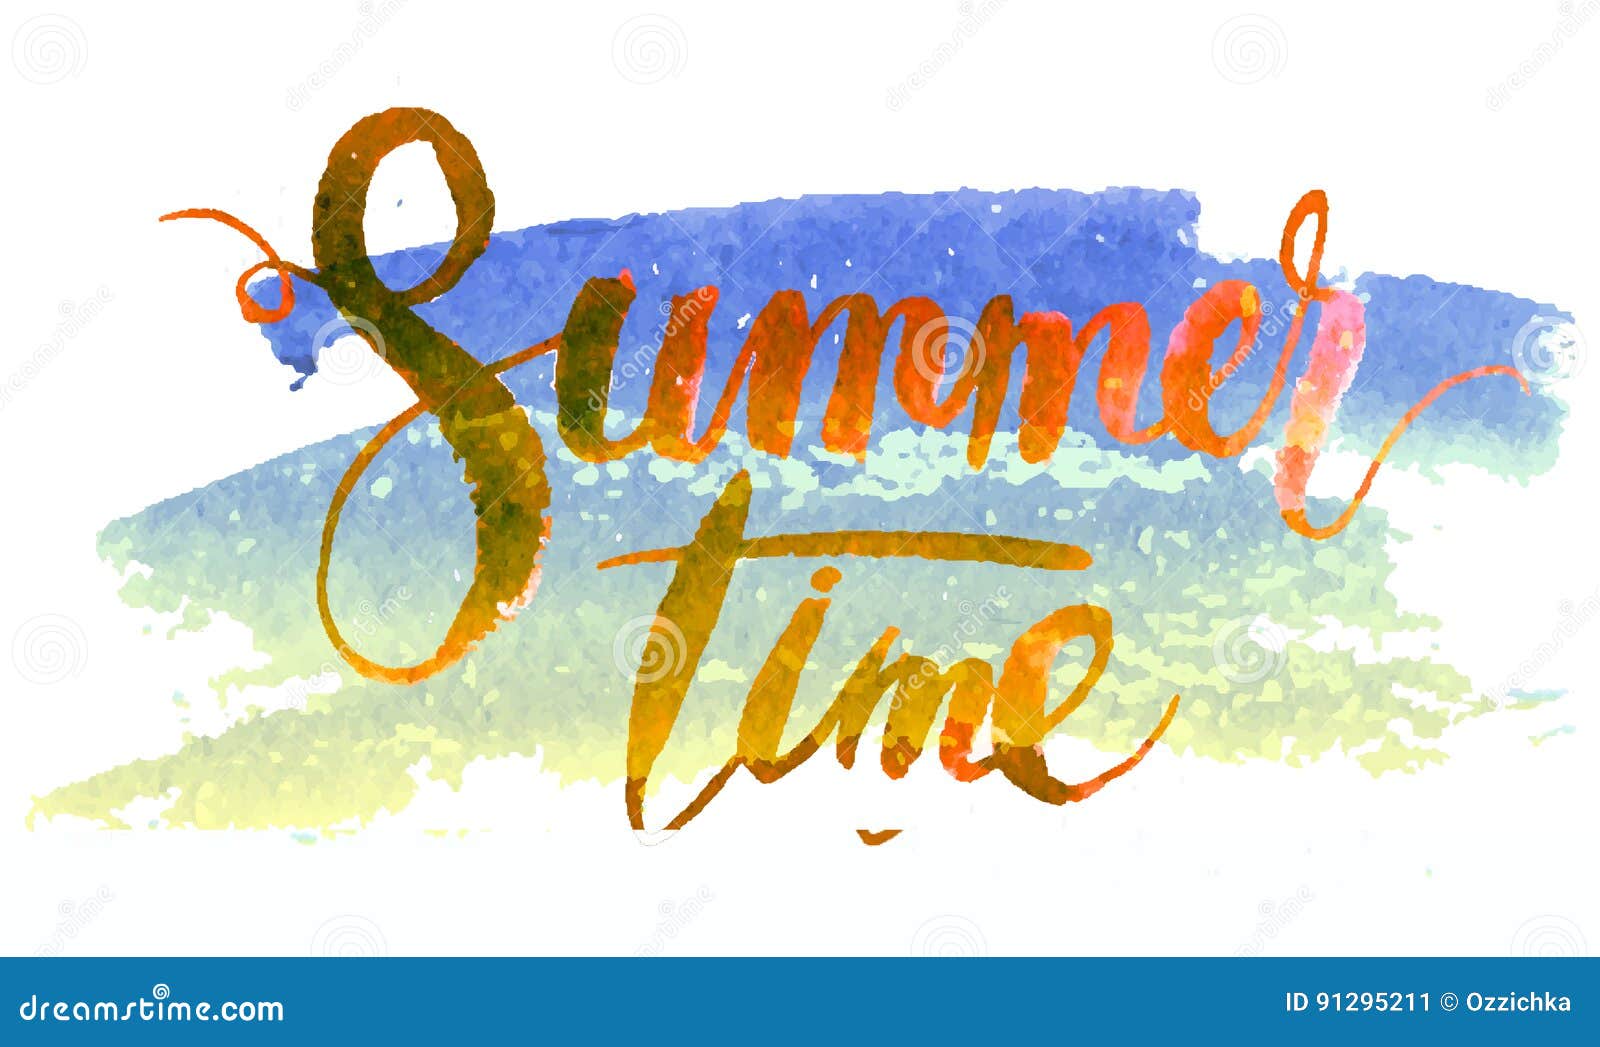 Mùa hè: Những khoảnh khắc trong mùa hè chắc hẳn sẽ đem lại cho bạn nhiều niềm vui và tràn đầy năng lượng. Hãy xem qua những hình ảnh đầy màu sắc và rực rỡ của mùa hè để cảm nhận được niềm vui và sự tươi trẻ của mùa này. 